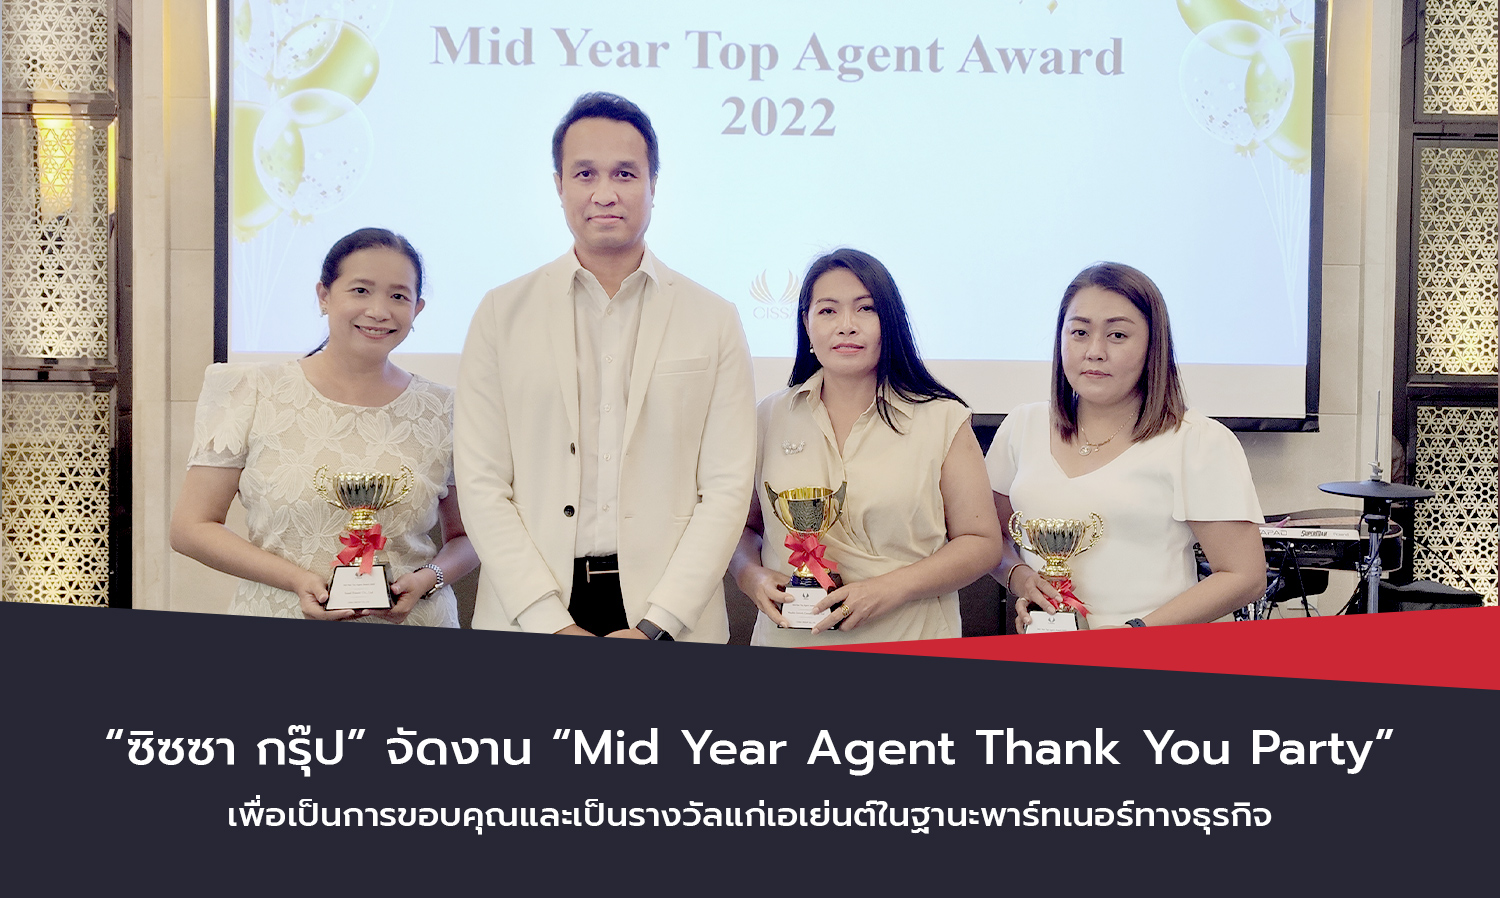 ซิซซา กรุ๊ป จัดงาน Mid Year Agent Thank You Party เพื่อเป็นการขอบคุณและเป็นรางวัลแก่เอเย่นต์ในฐานะพาร์ทเนอร์ทางธุรกิจ